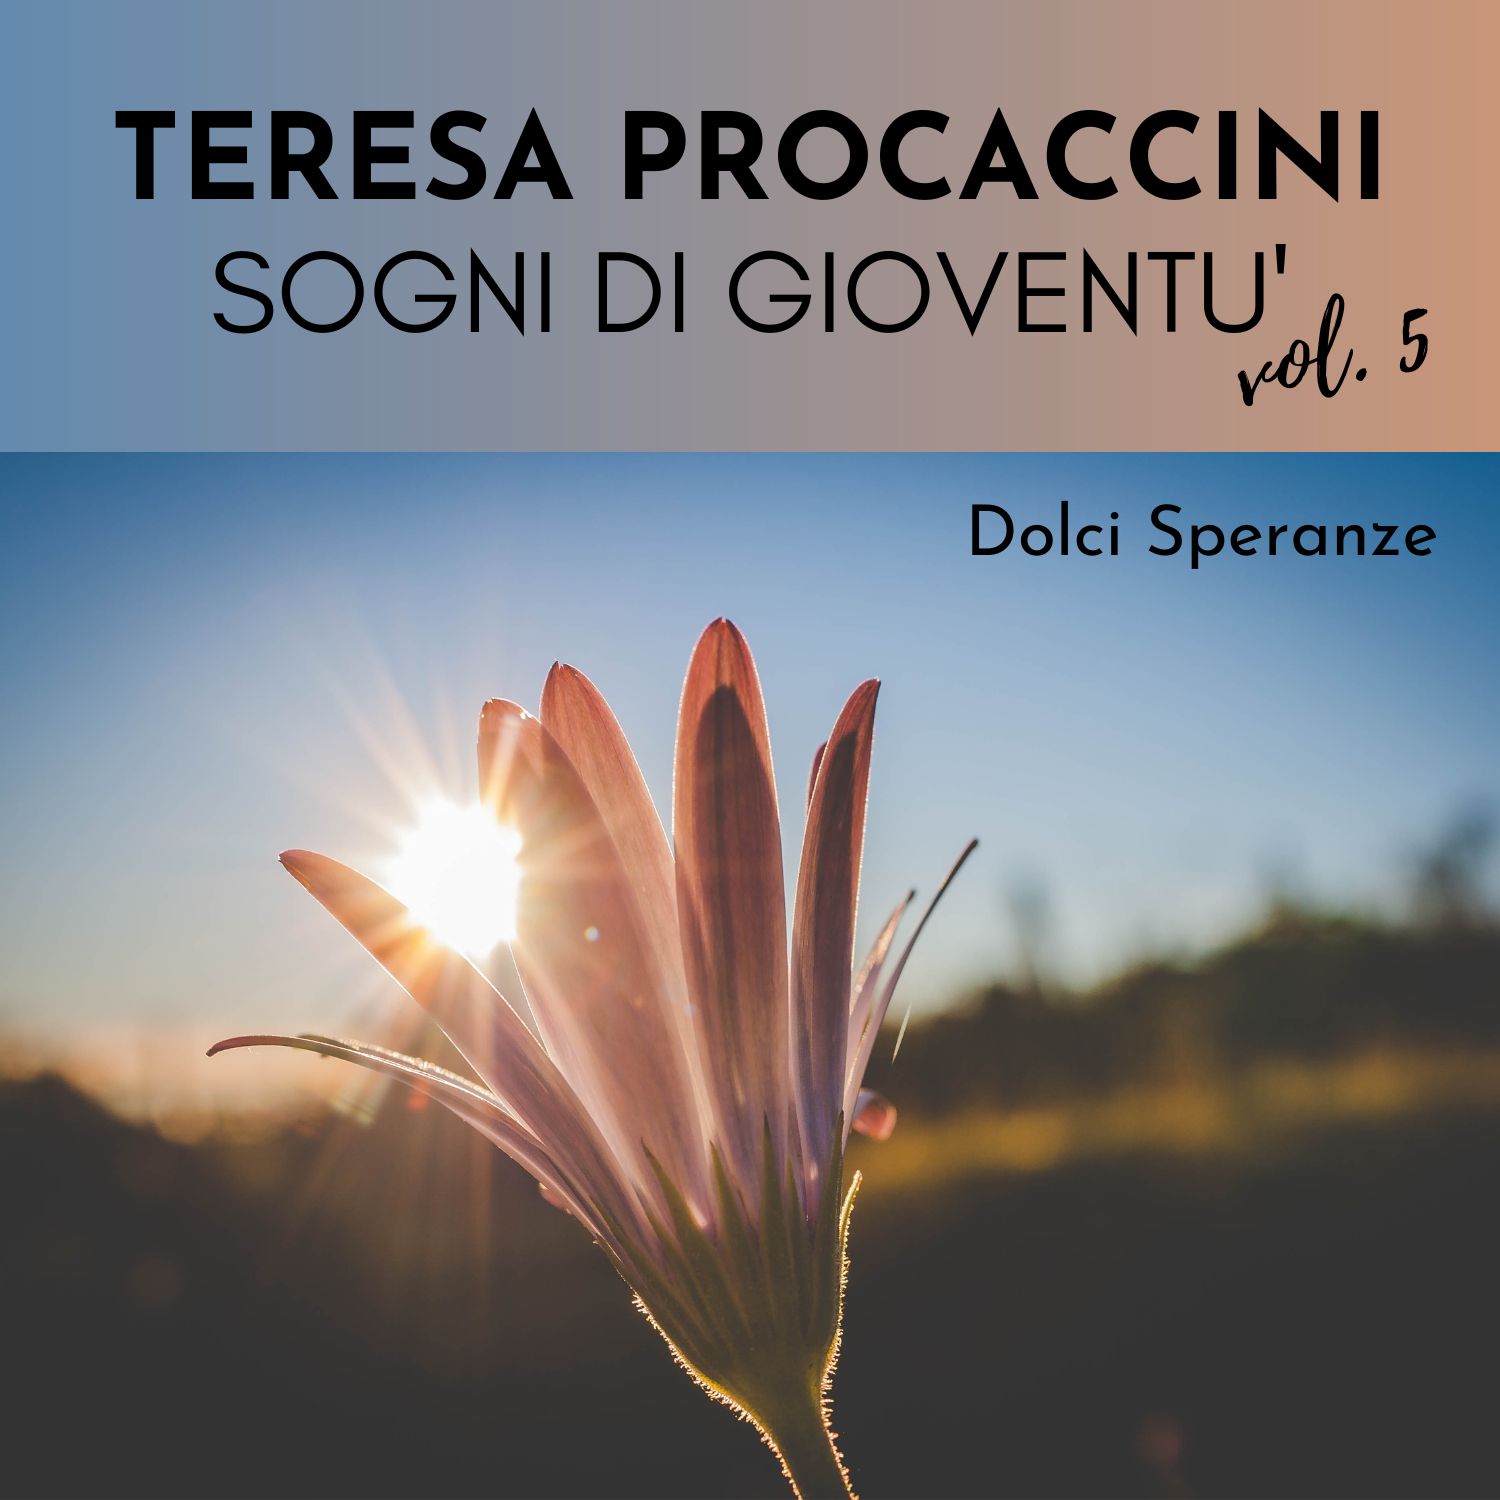 Teresa Procaccini: Sogni di gioventù, Vol. 5 (Dolci Speranze)